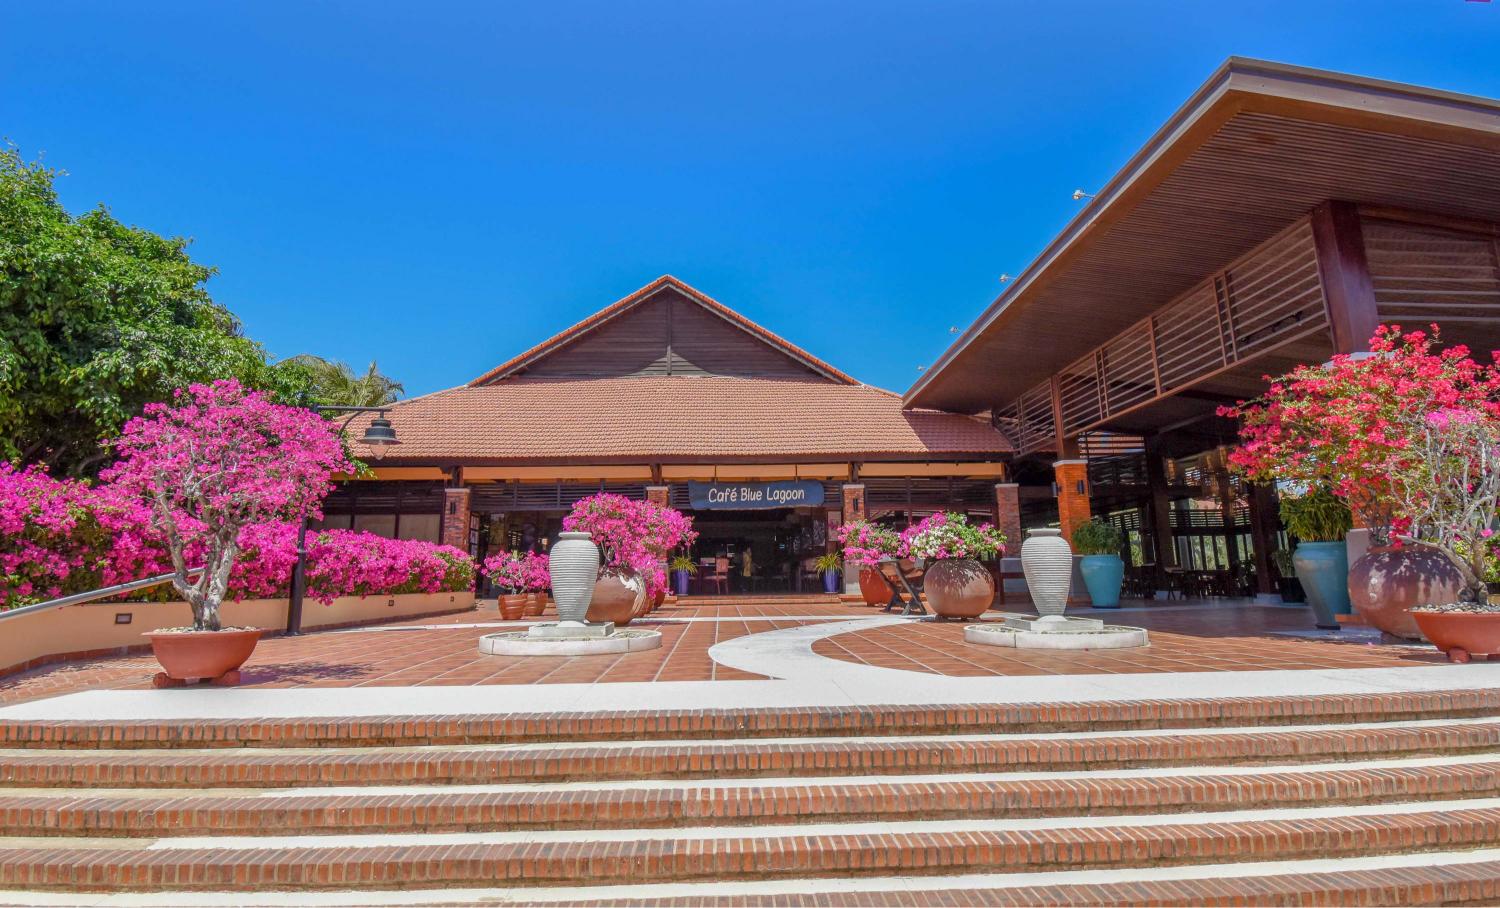 Pandanus Resort Cafe Blue Lagoon 1 Mùa hè thảnh thơi với trải nghiệm trọn vẹn Mũi Né cùng Pandanus Resort